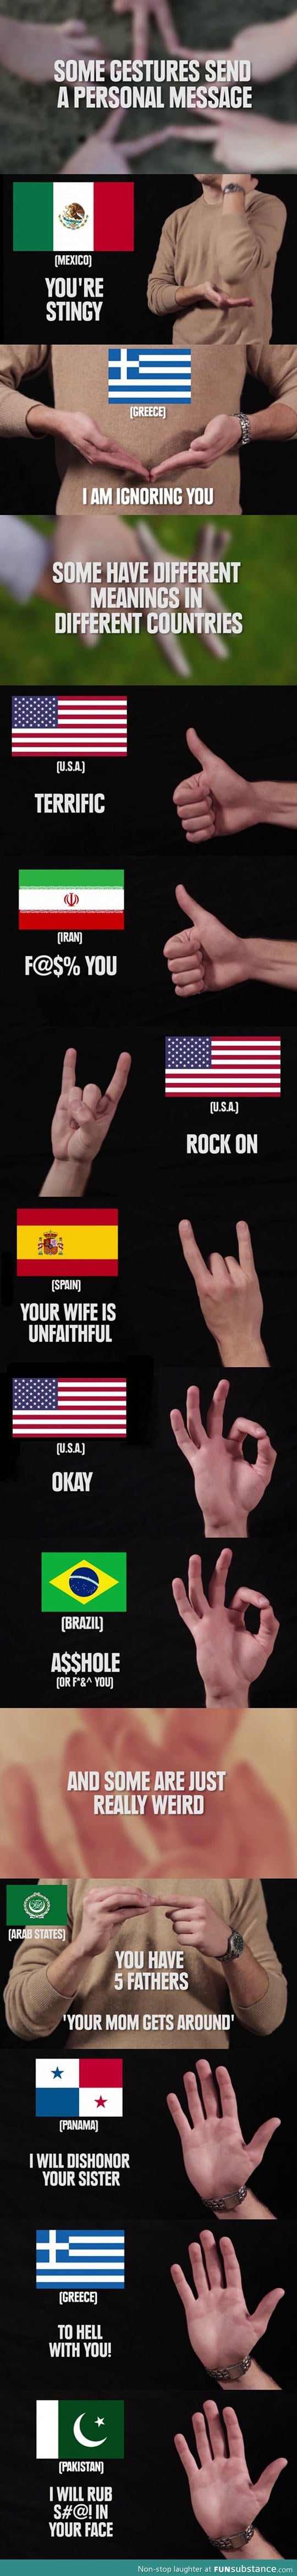 Hand gestures around the world